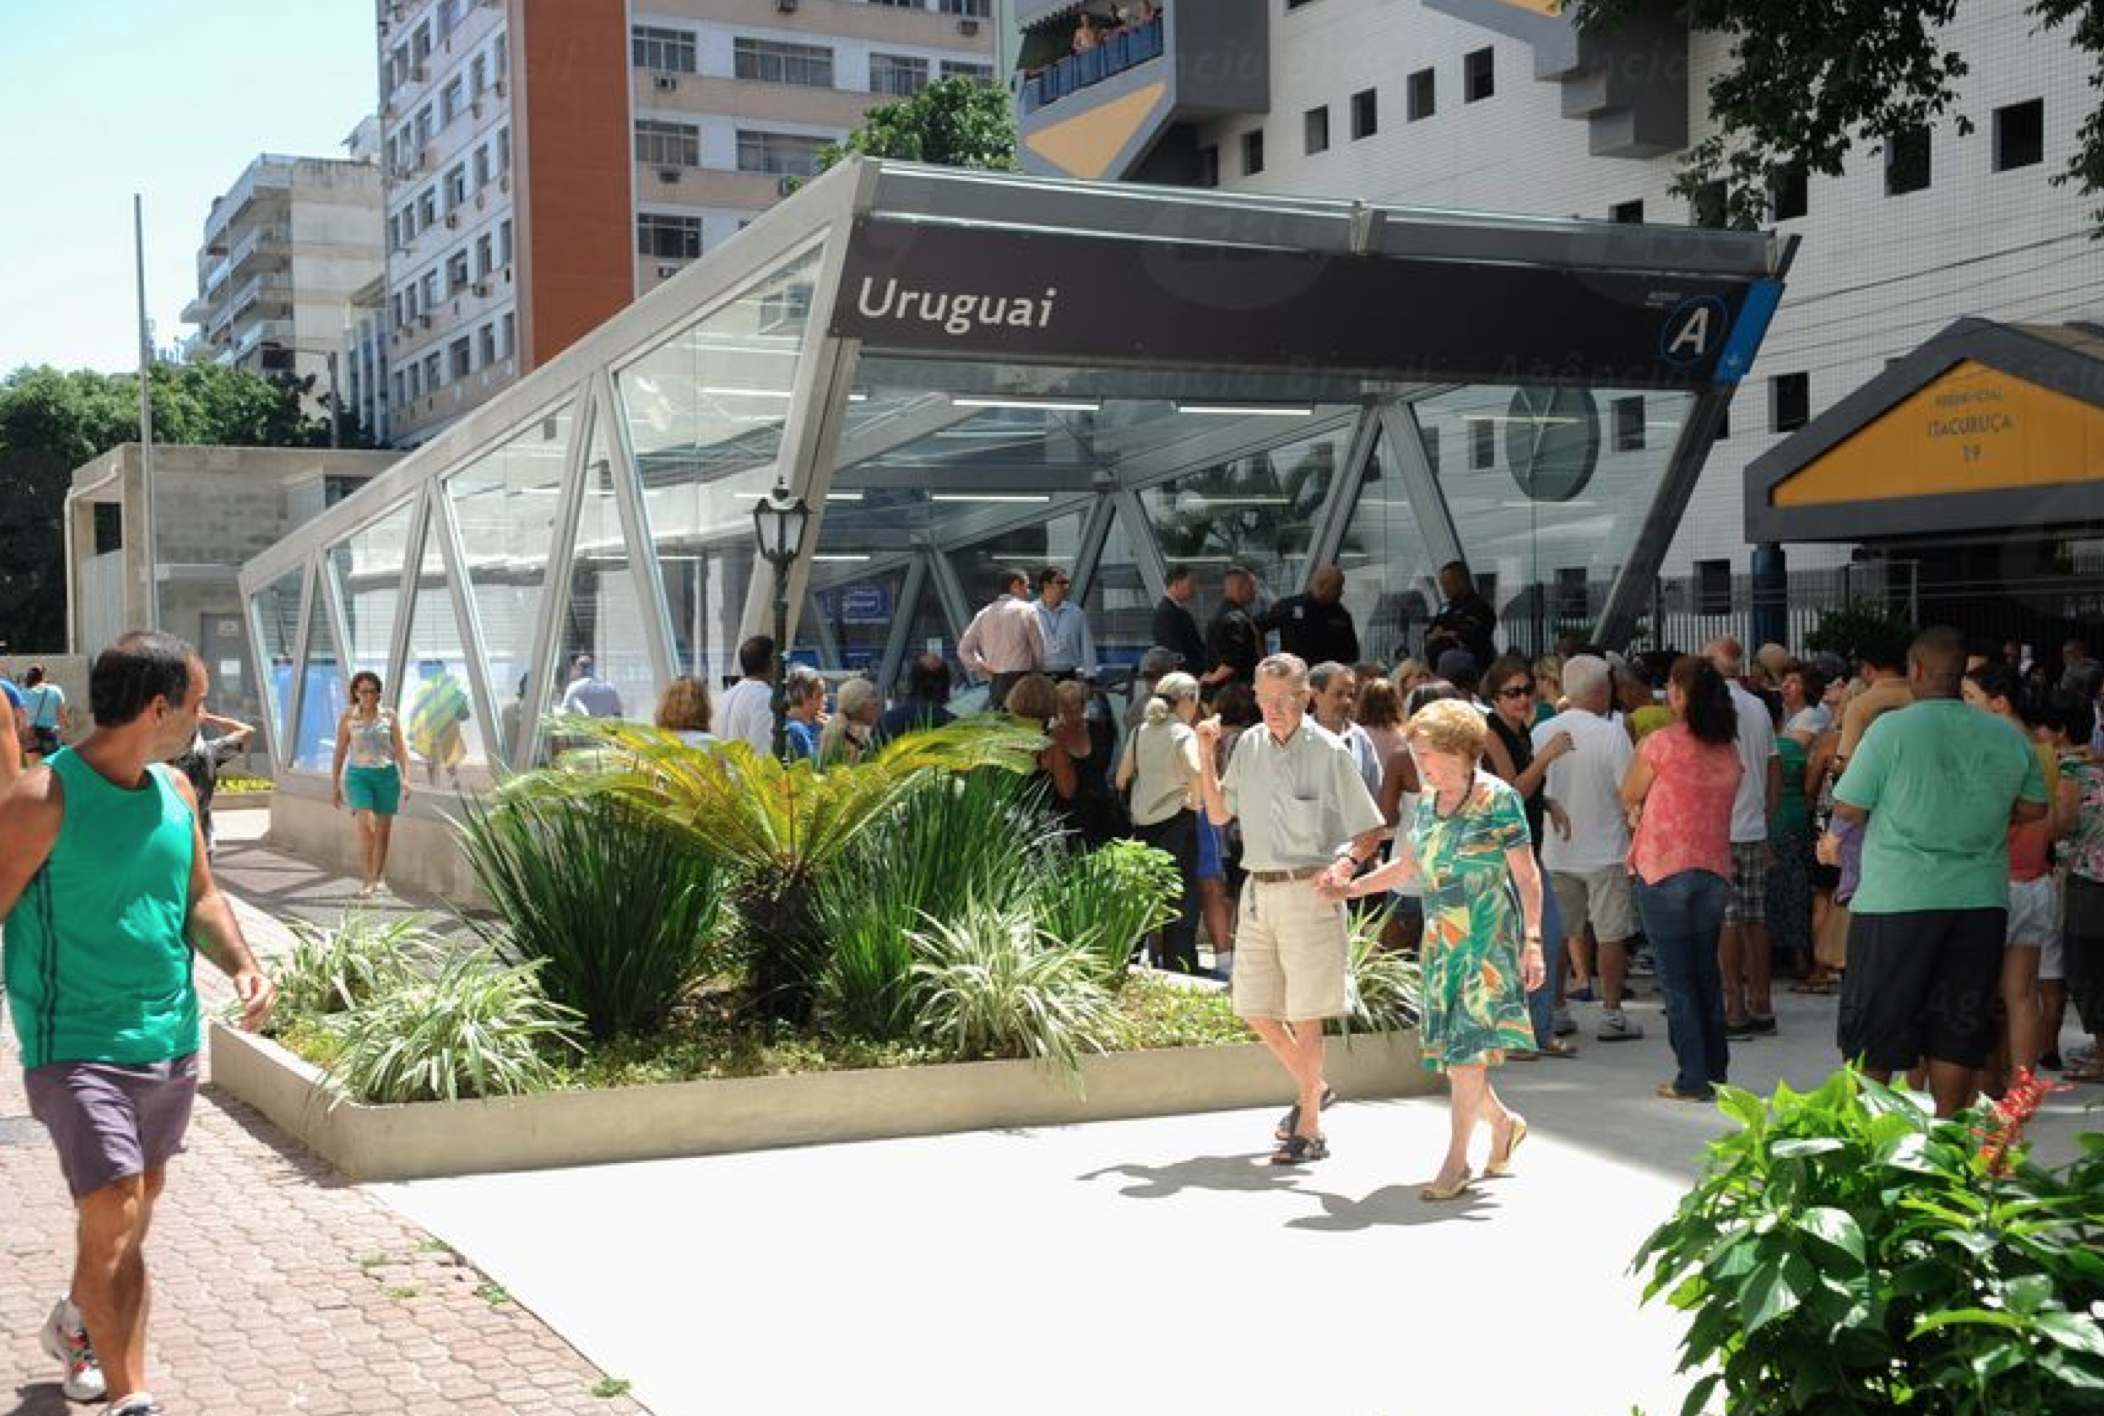 The Estação Uruguai in Tijuca, Rio de Janeiro, Brazil News